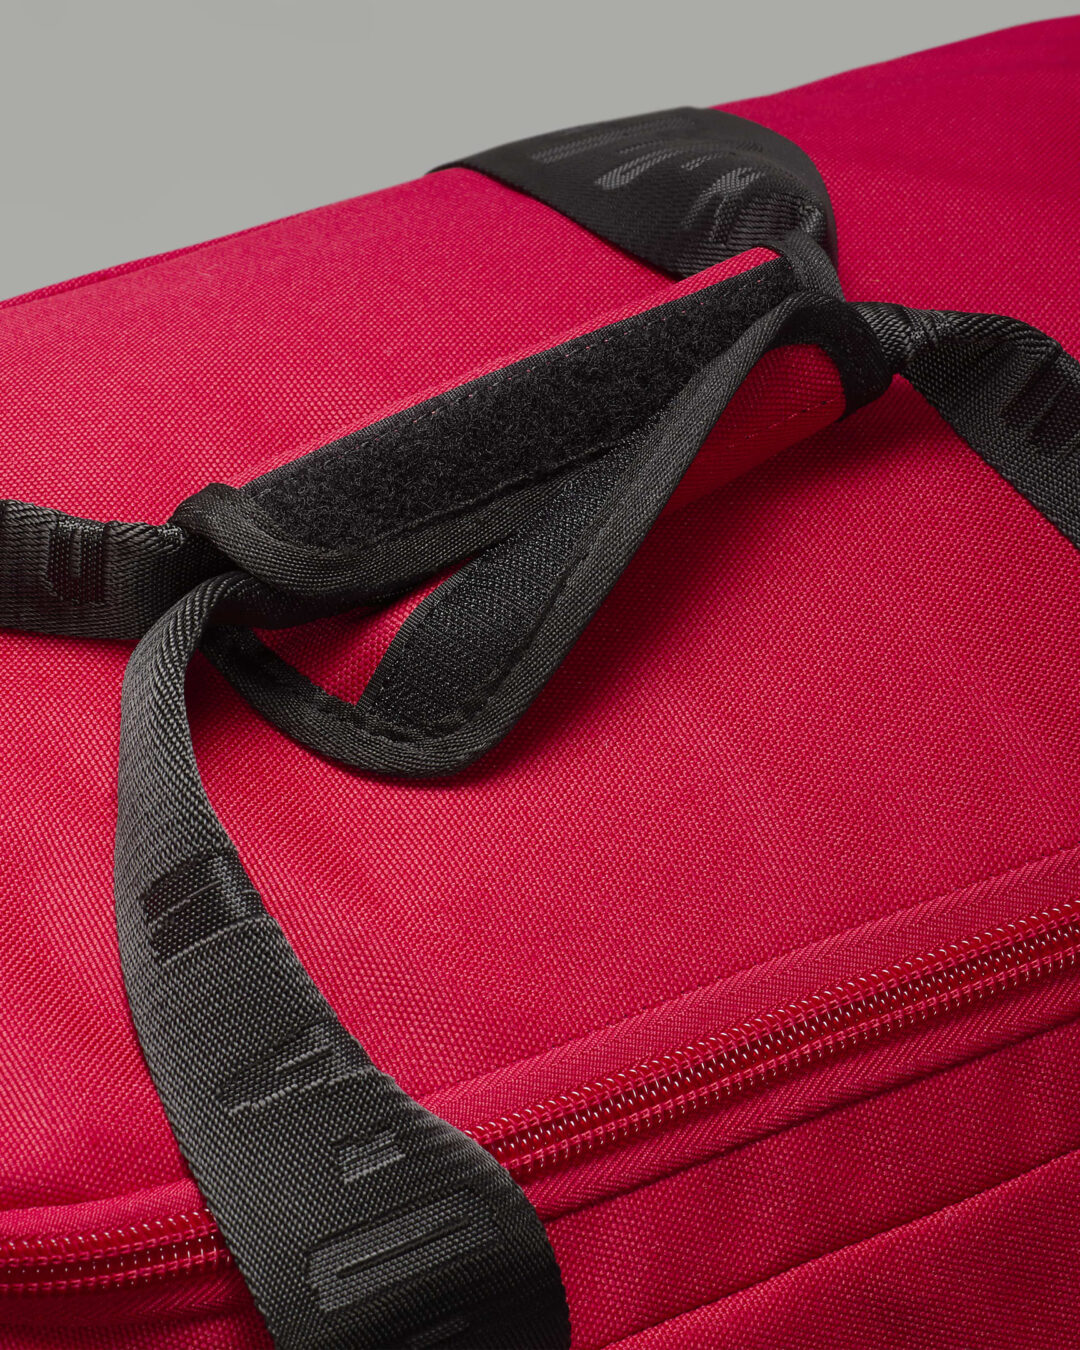 一泊旅行用に、試合用に最適な「ナイキ ジョーダン ベロシティ ダッフルバッグ」が発売 (NIKE JORDAN Velocity duffel bag) [HF7295-010/HF7295-687/HF7294-010/HF7294-687]